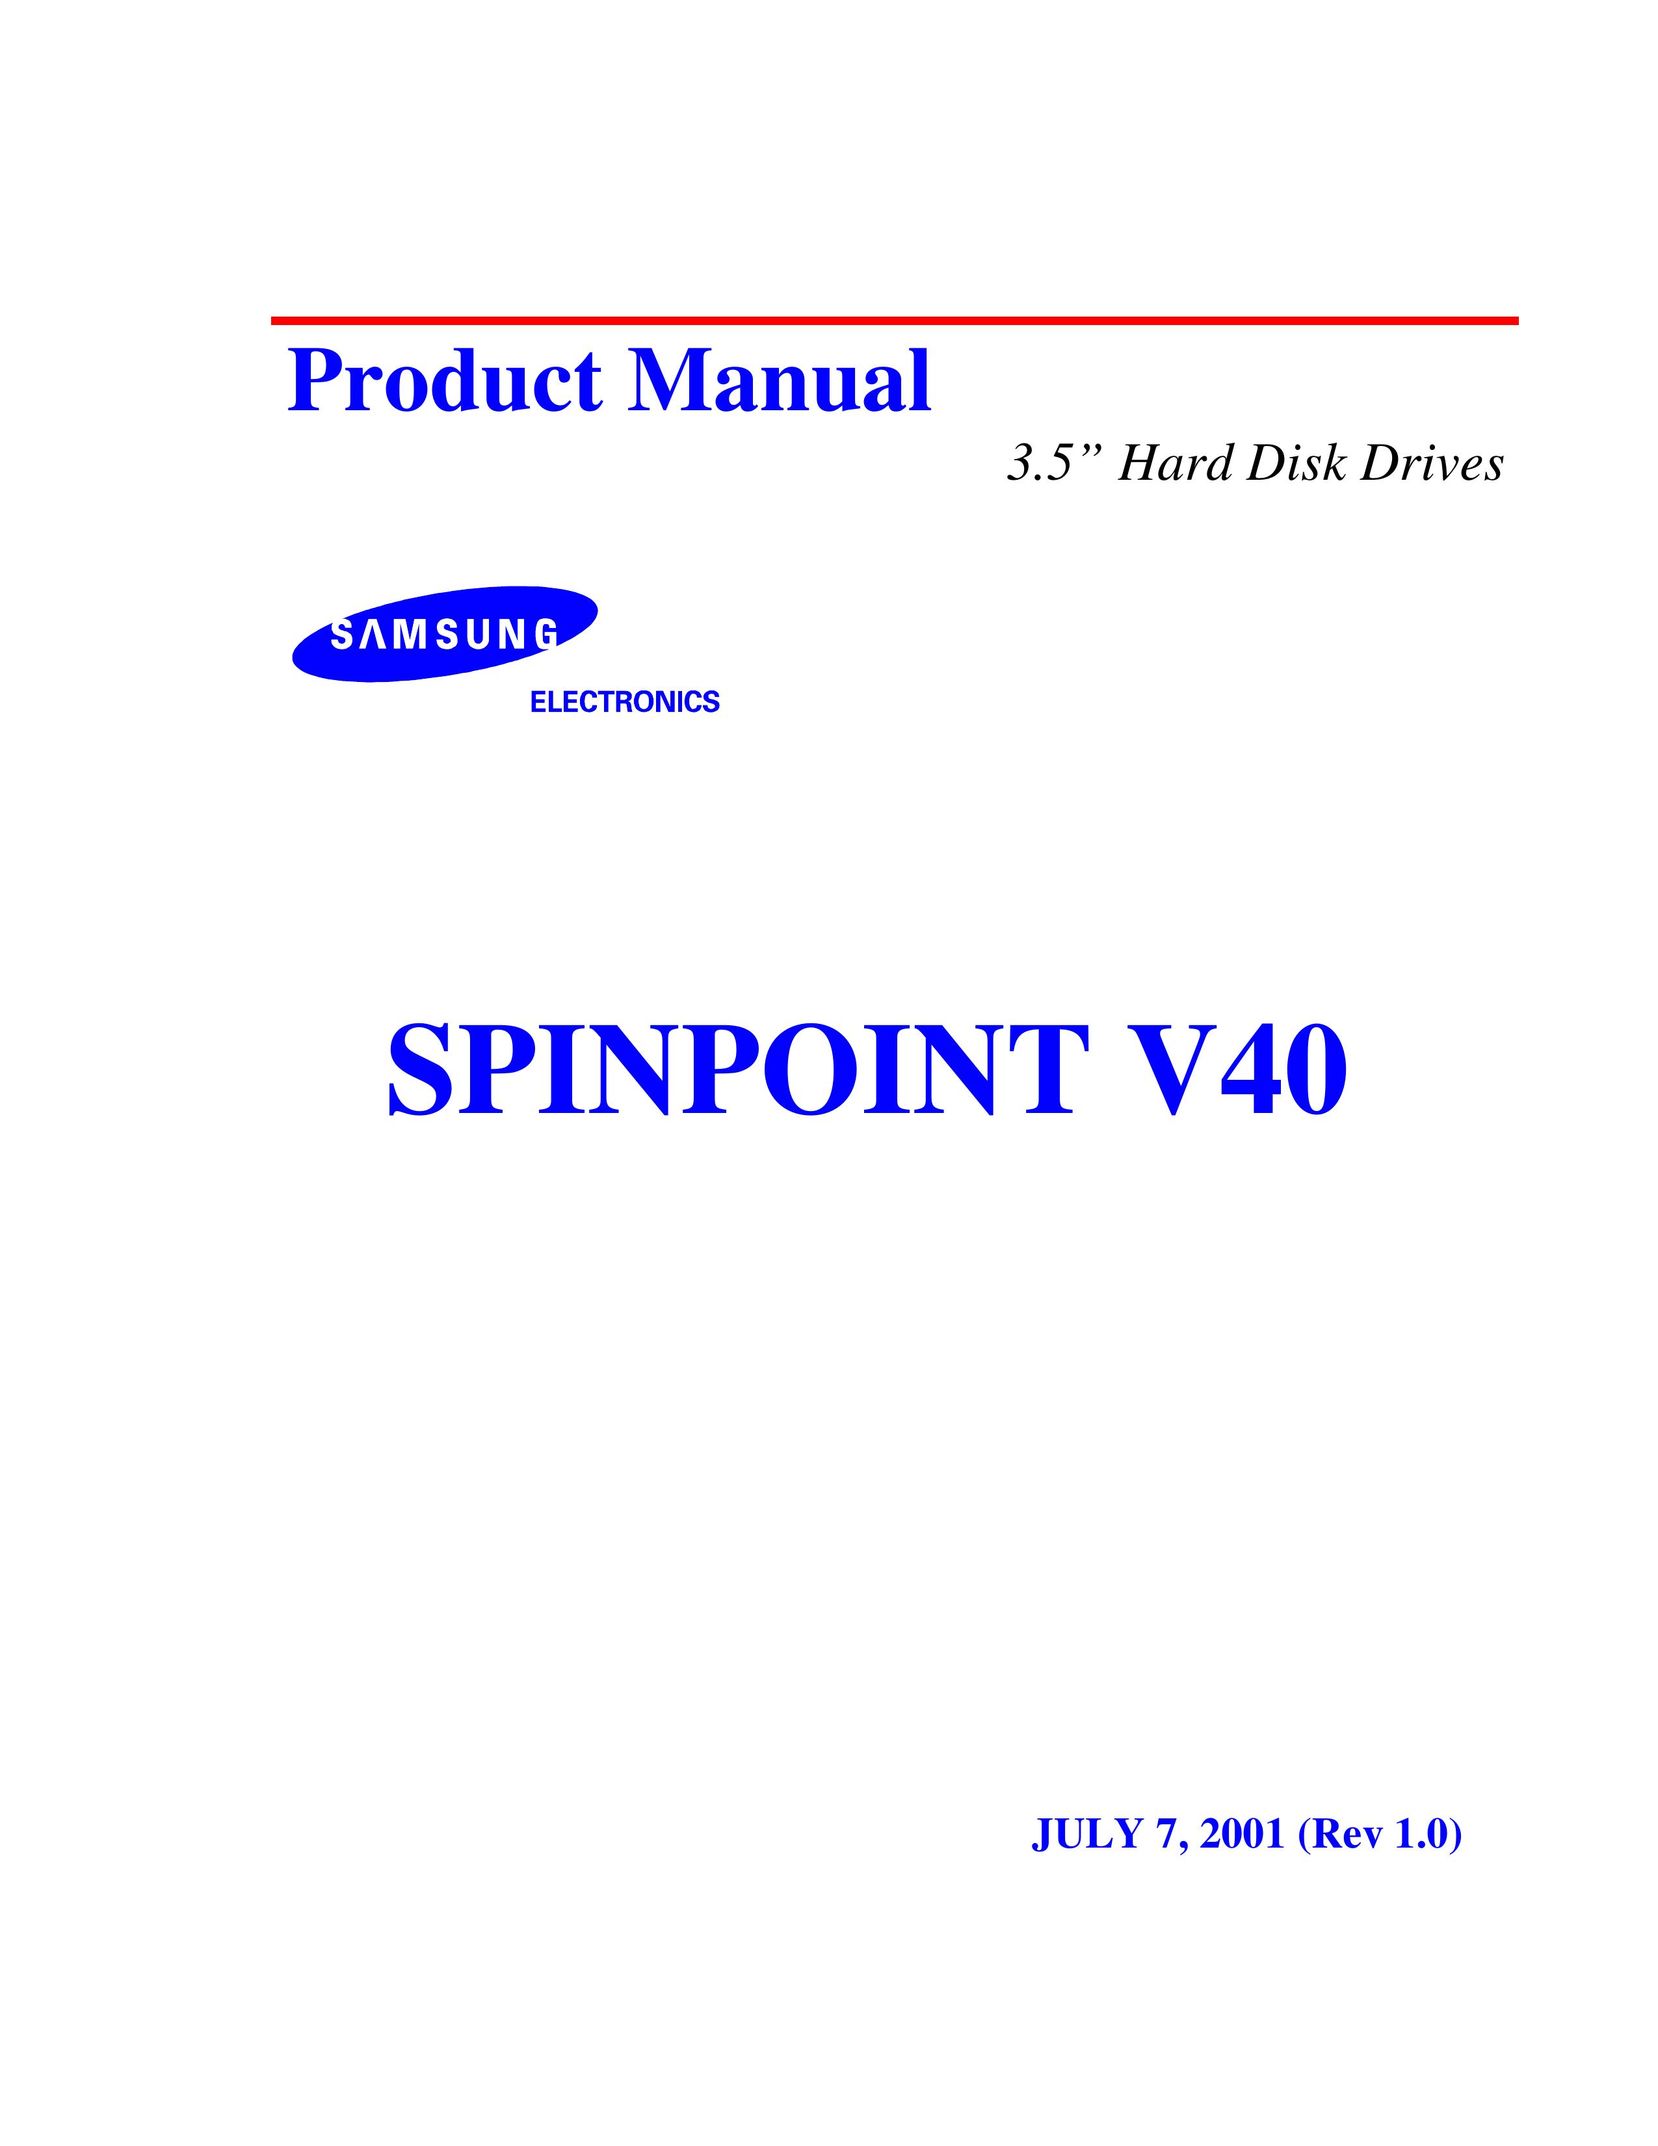 Samsung spinpoint v40 Computer Hardware User Manual